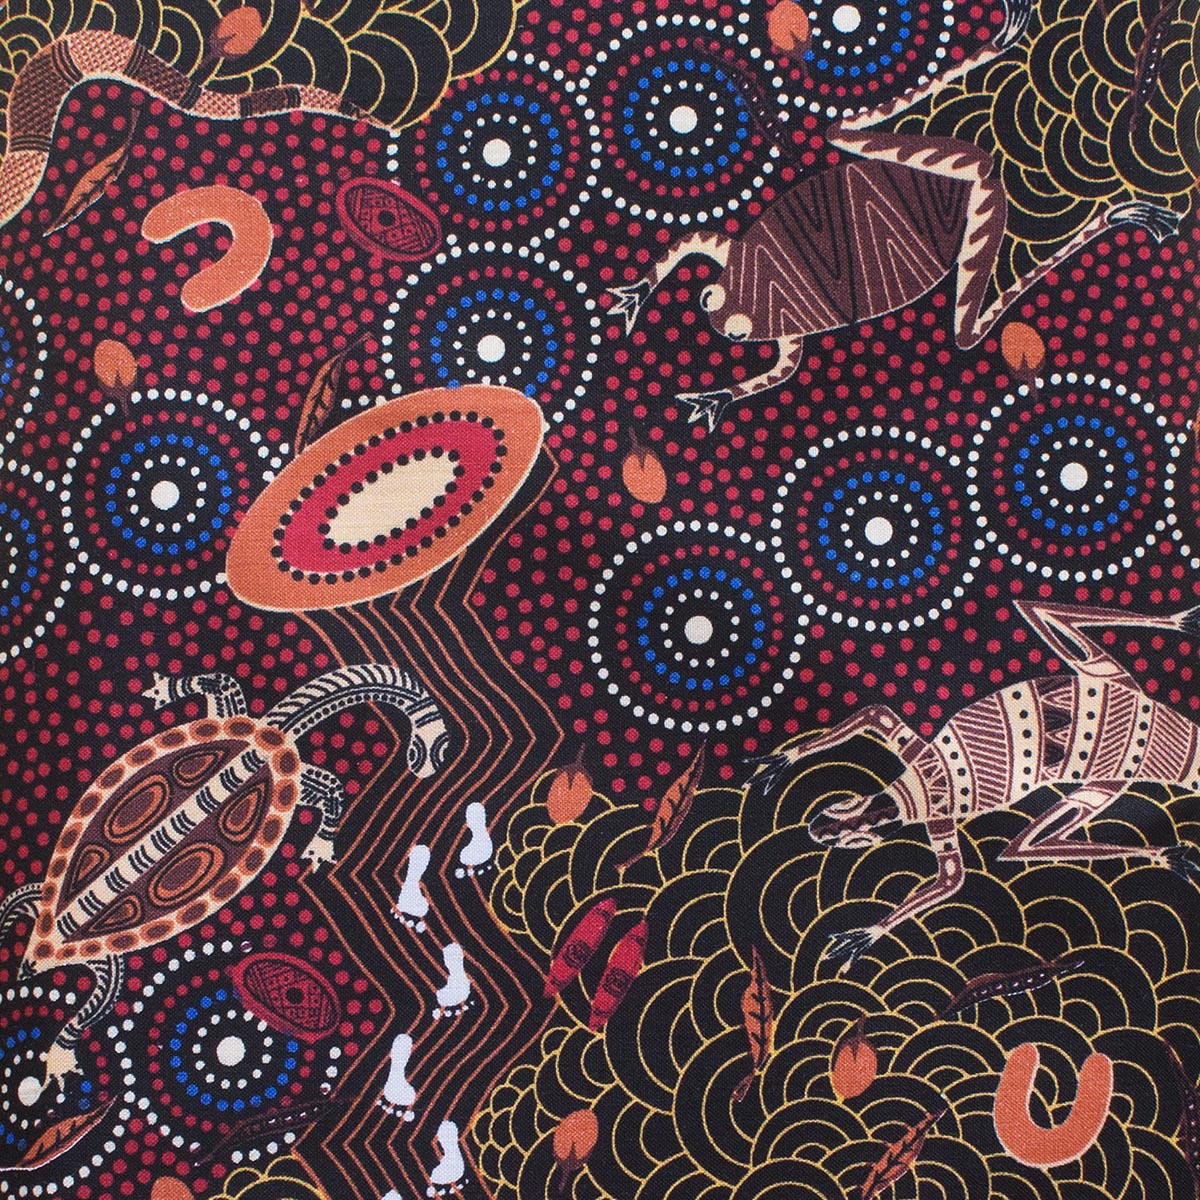 AROUND WATERHOLE RED by Aboriginal Artist NAMBOOKA